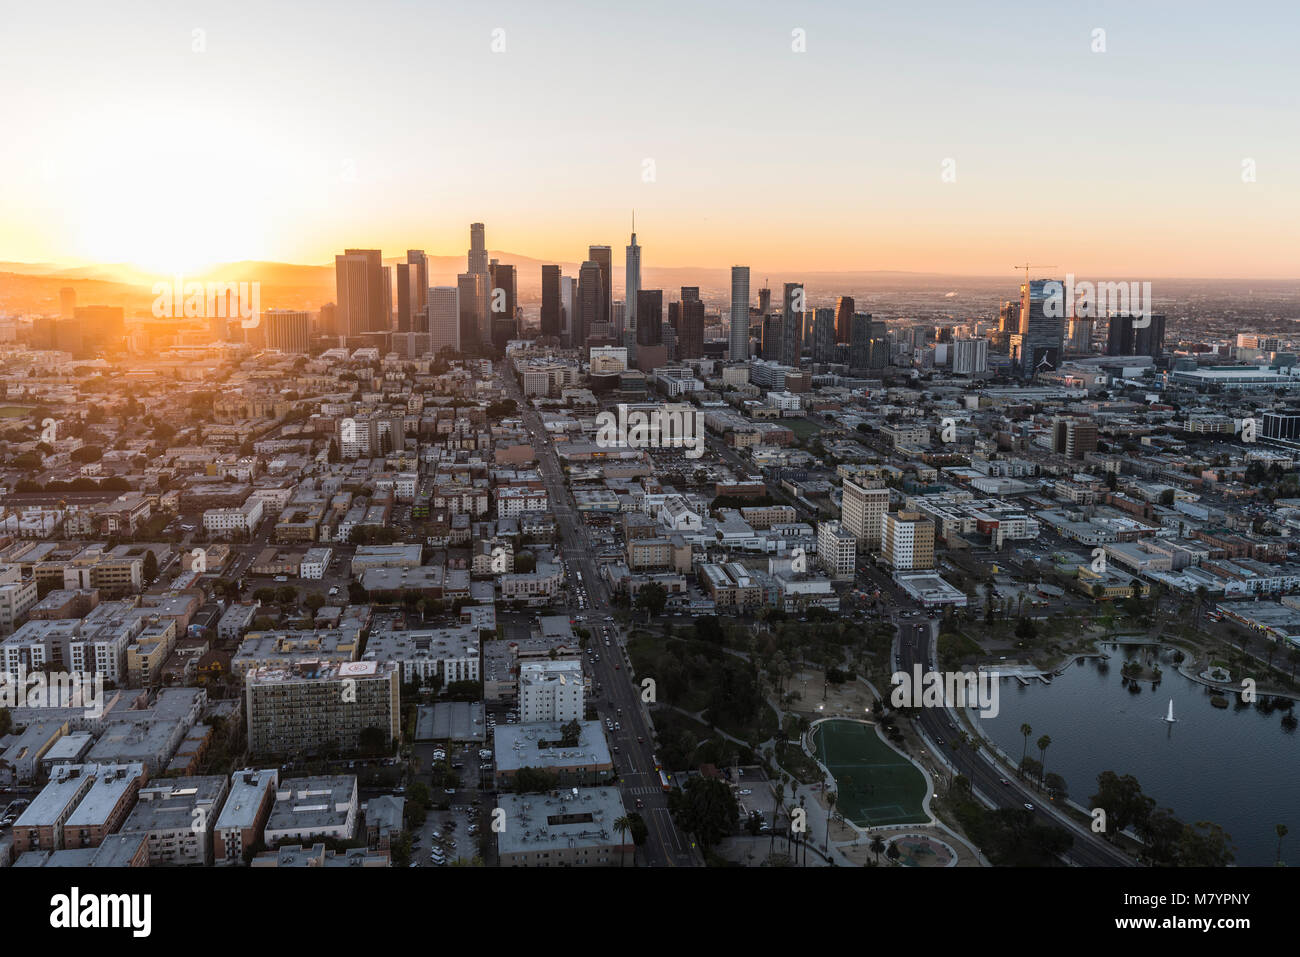 Los Angeles, Kalifornien, USA - 20. Februar 2018: Antenne morgen Blick nach Osten auf der 6th Street in der Westlake Nachbarschaft in Richtung Downtown LA. Stockfoto